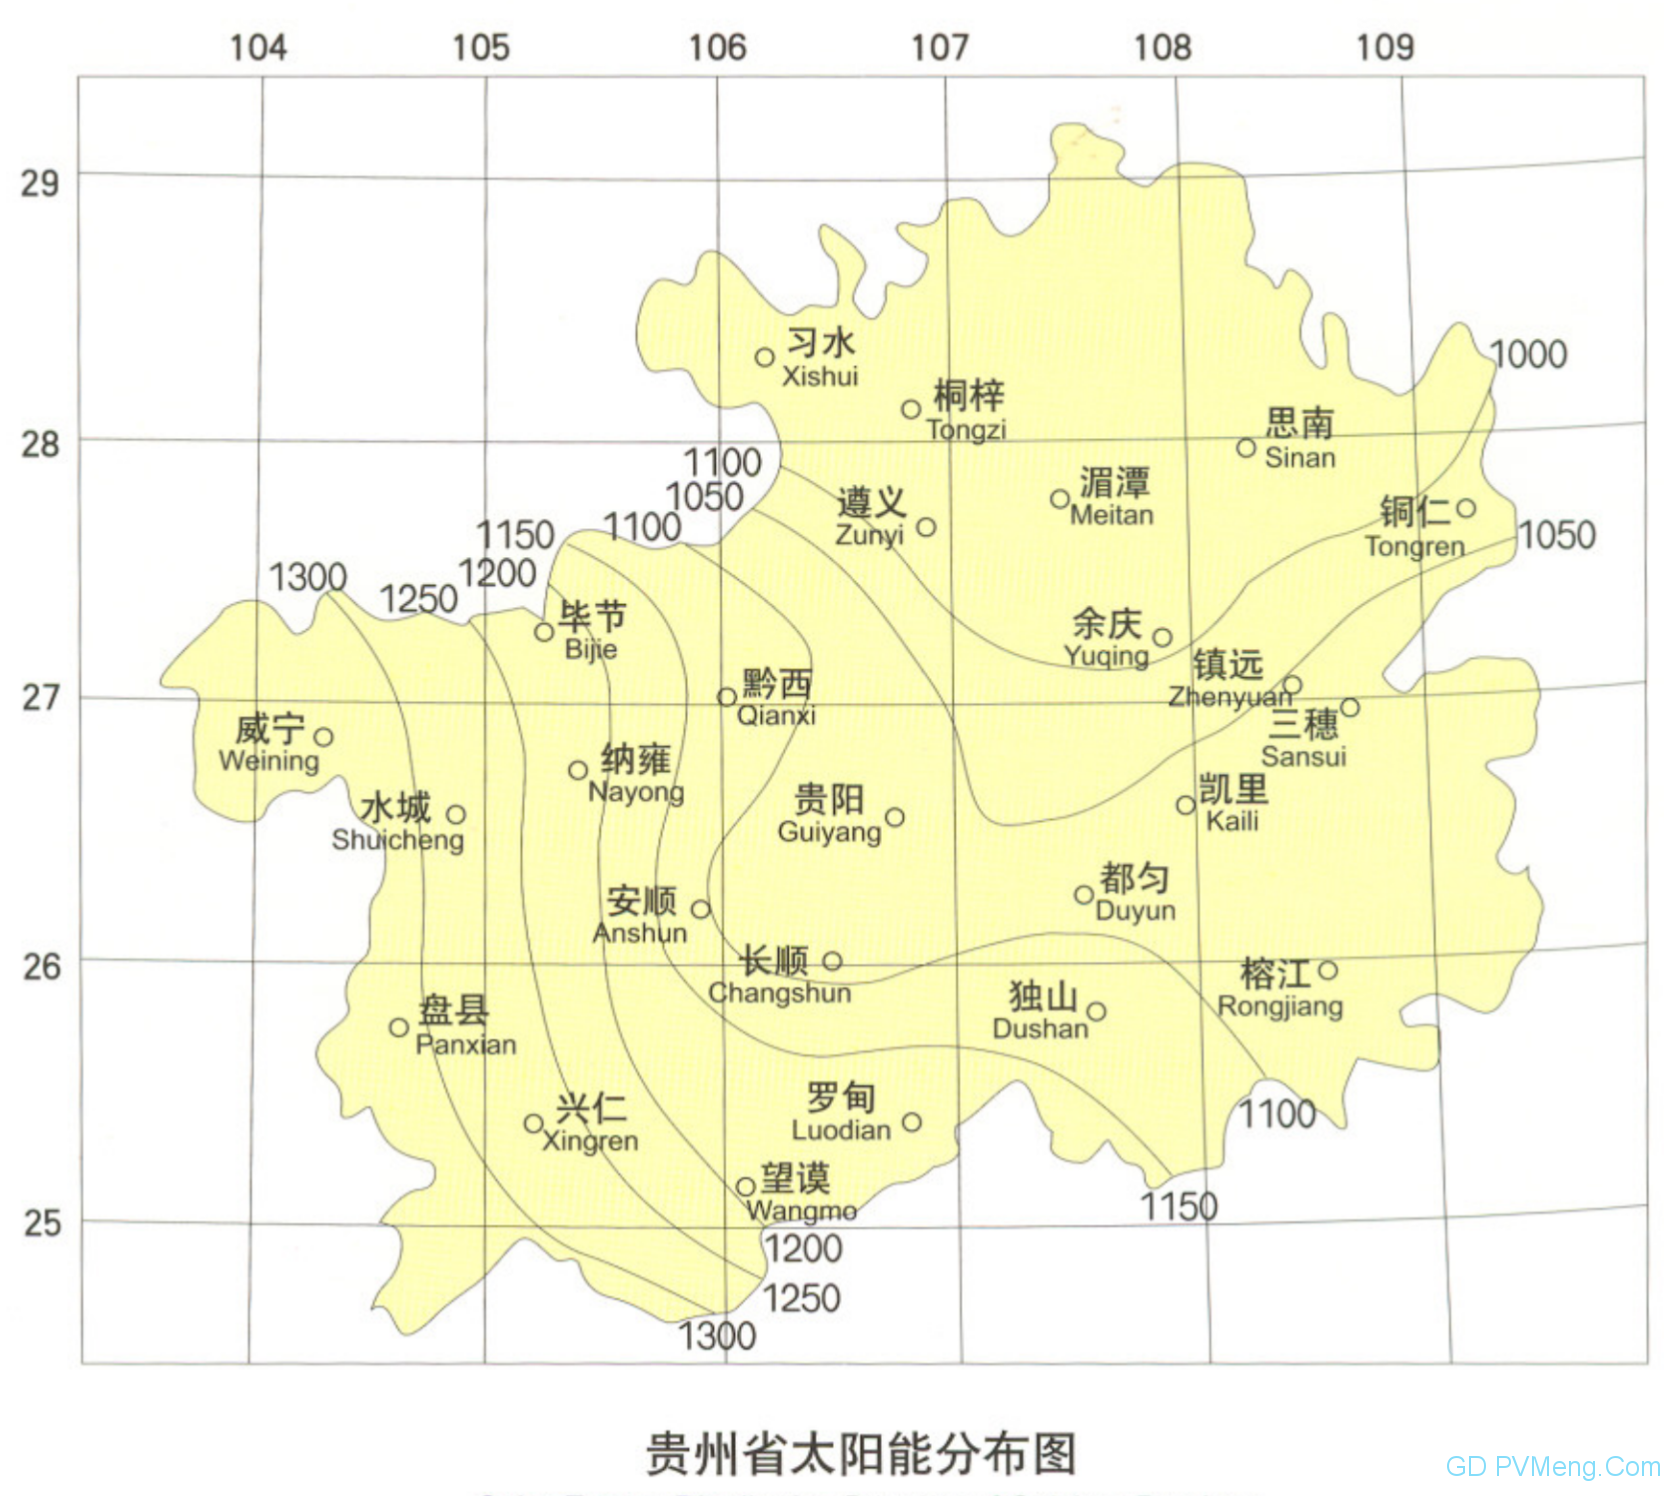 贵州电网可再生能源电价附加补贴清单申报发电项目复核通过项目名单（首批补贴清单第一阶段）20200423